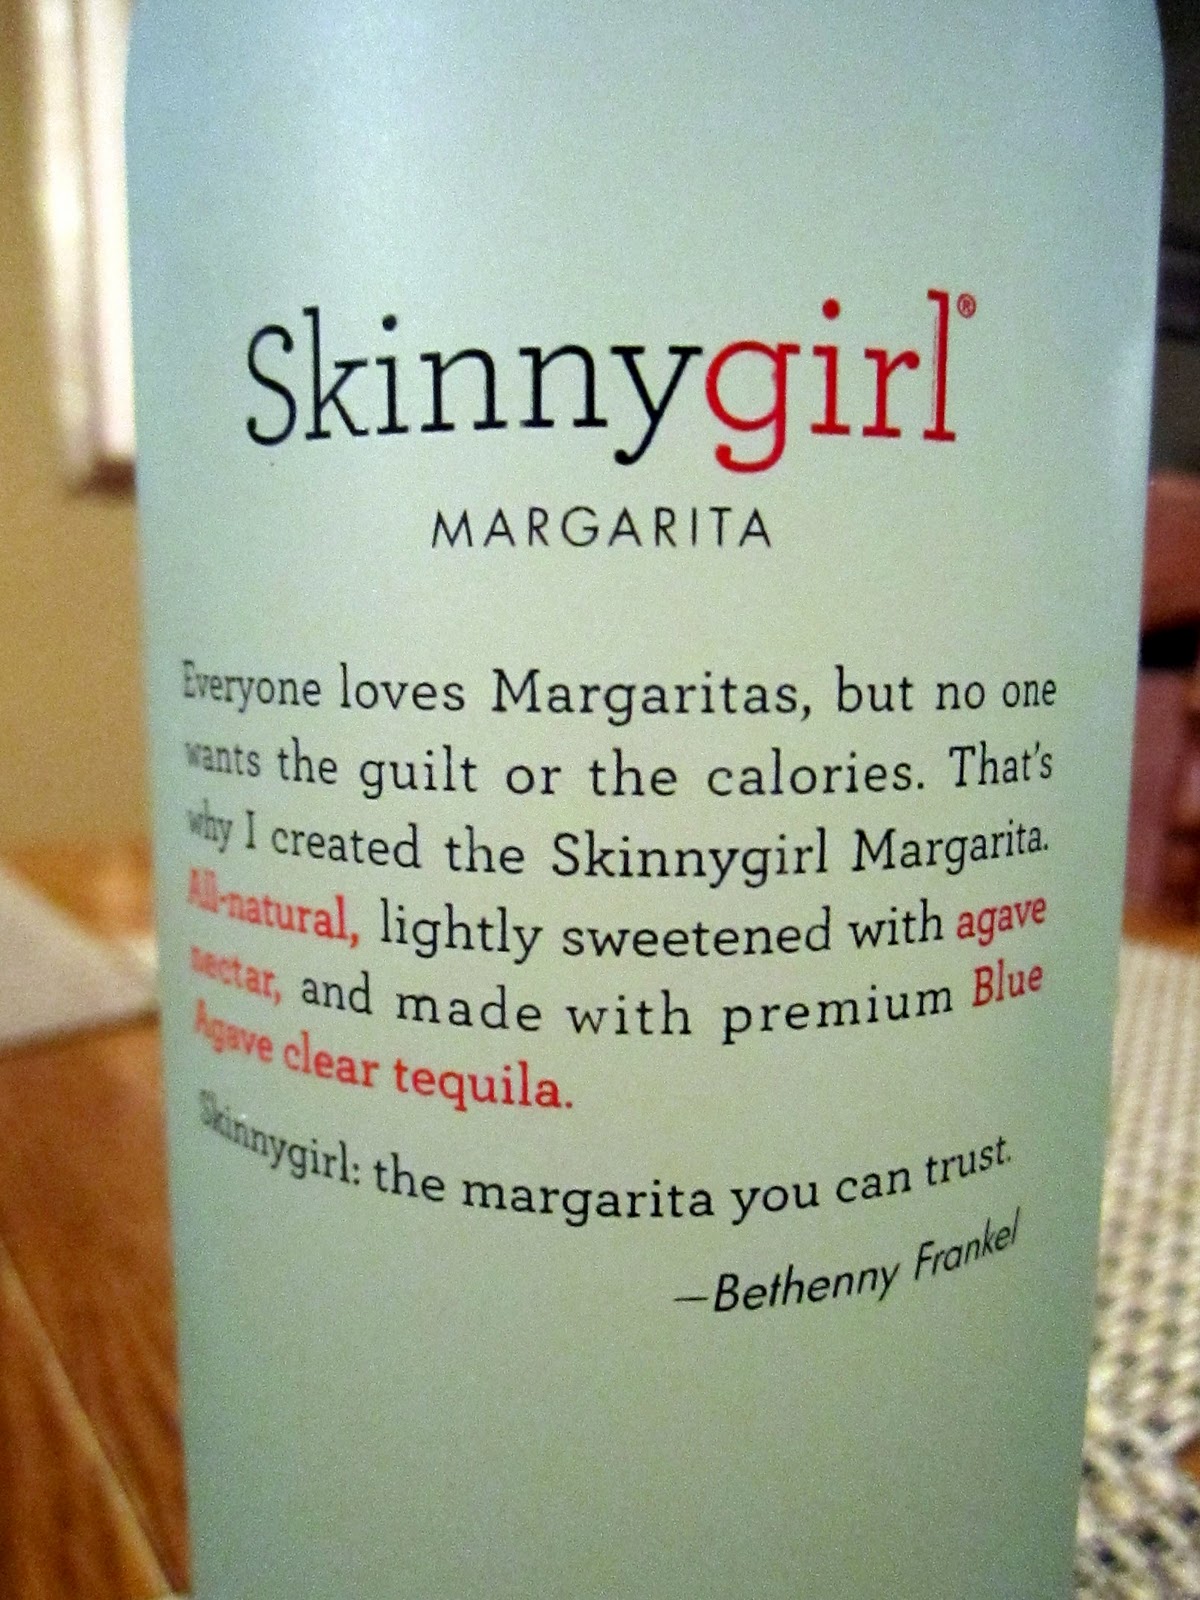 Skinnygirl Margarita Review